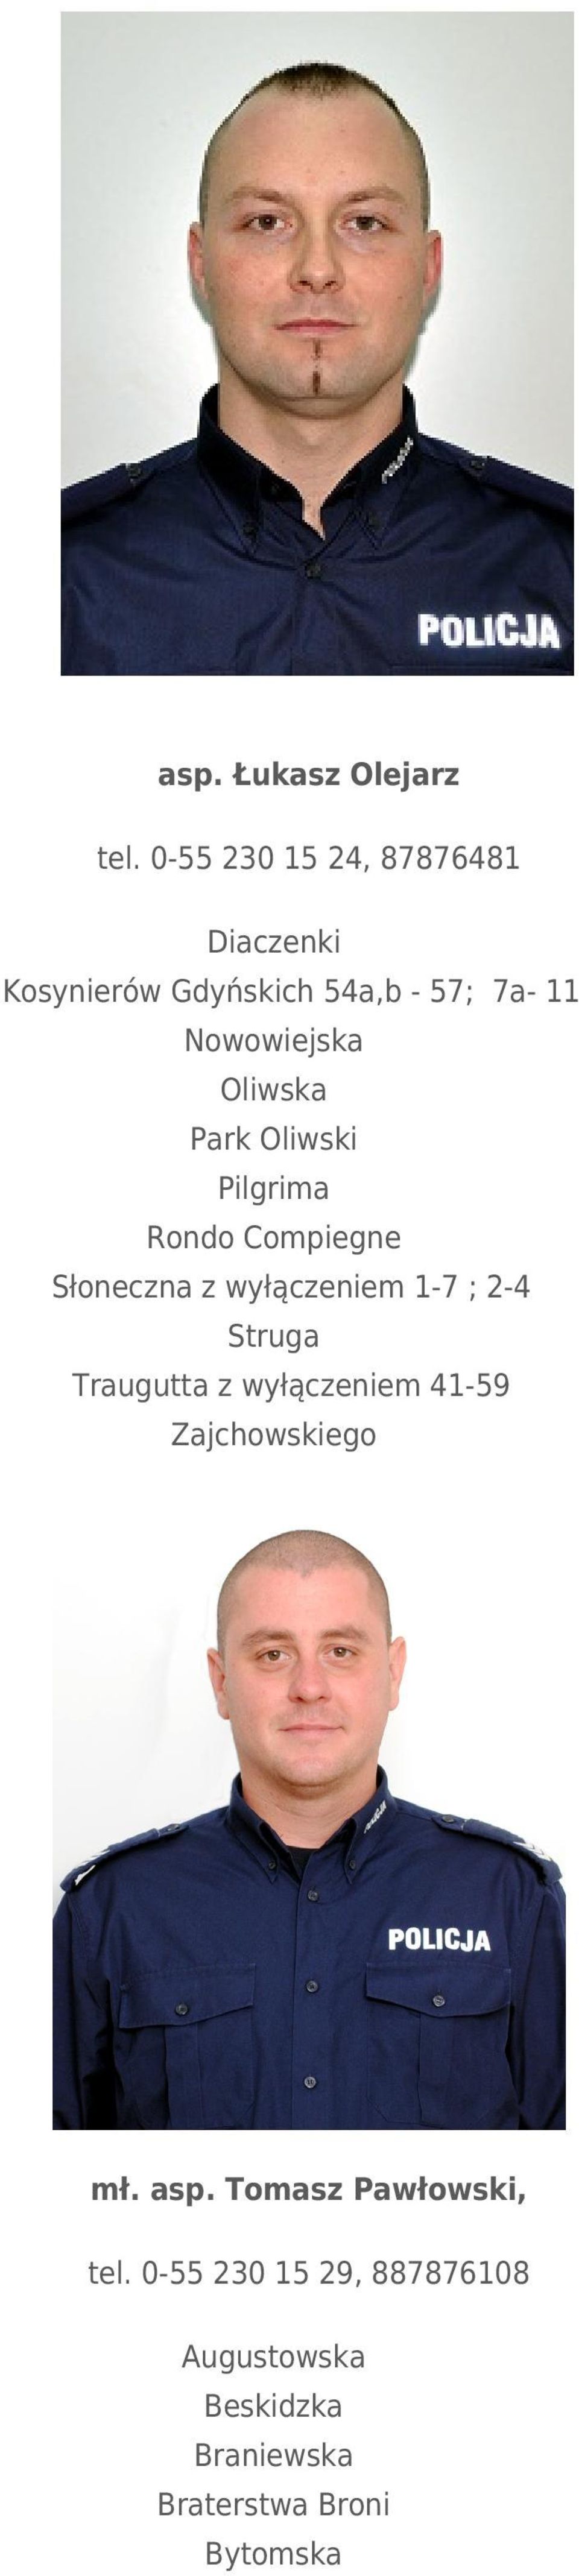 Oliwska Park Oliwski Pilgrima Rondo Compiegne Słoneczna z wyłączeniem 1-7 ; 2-4 Struga